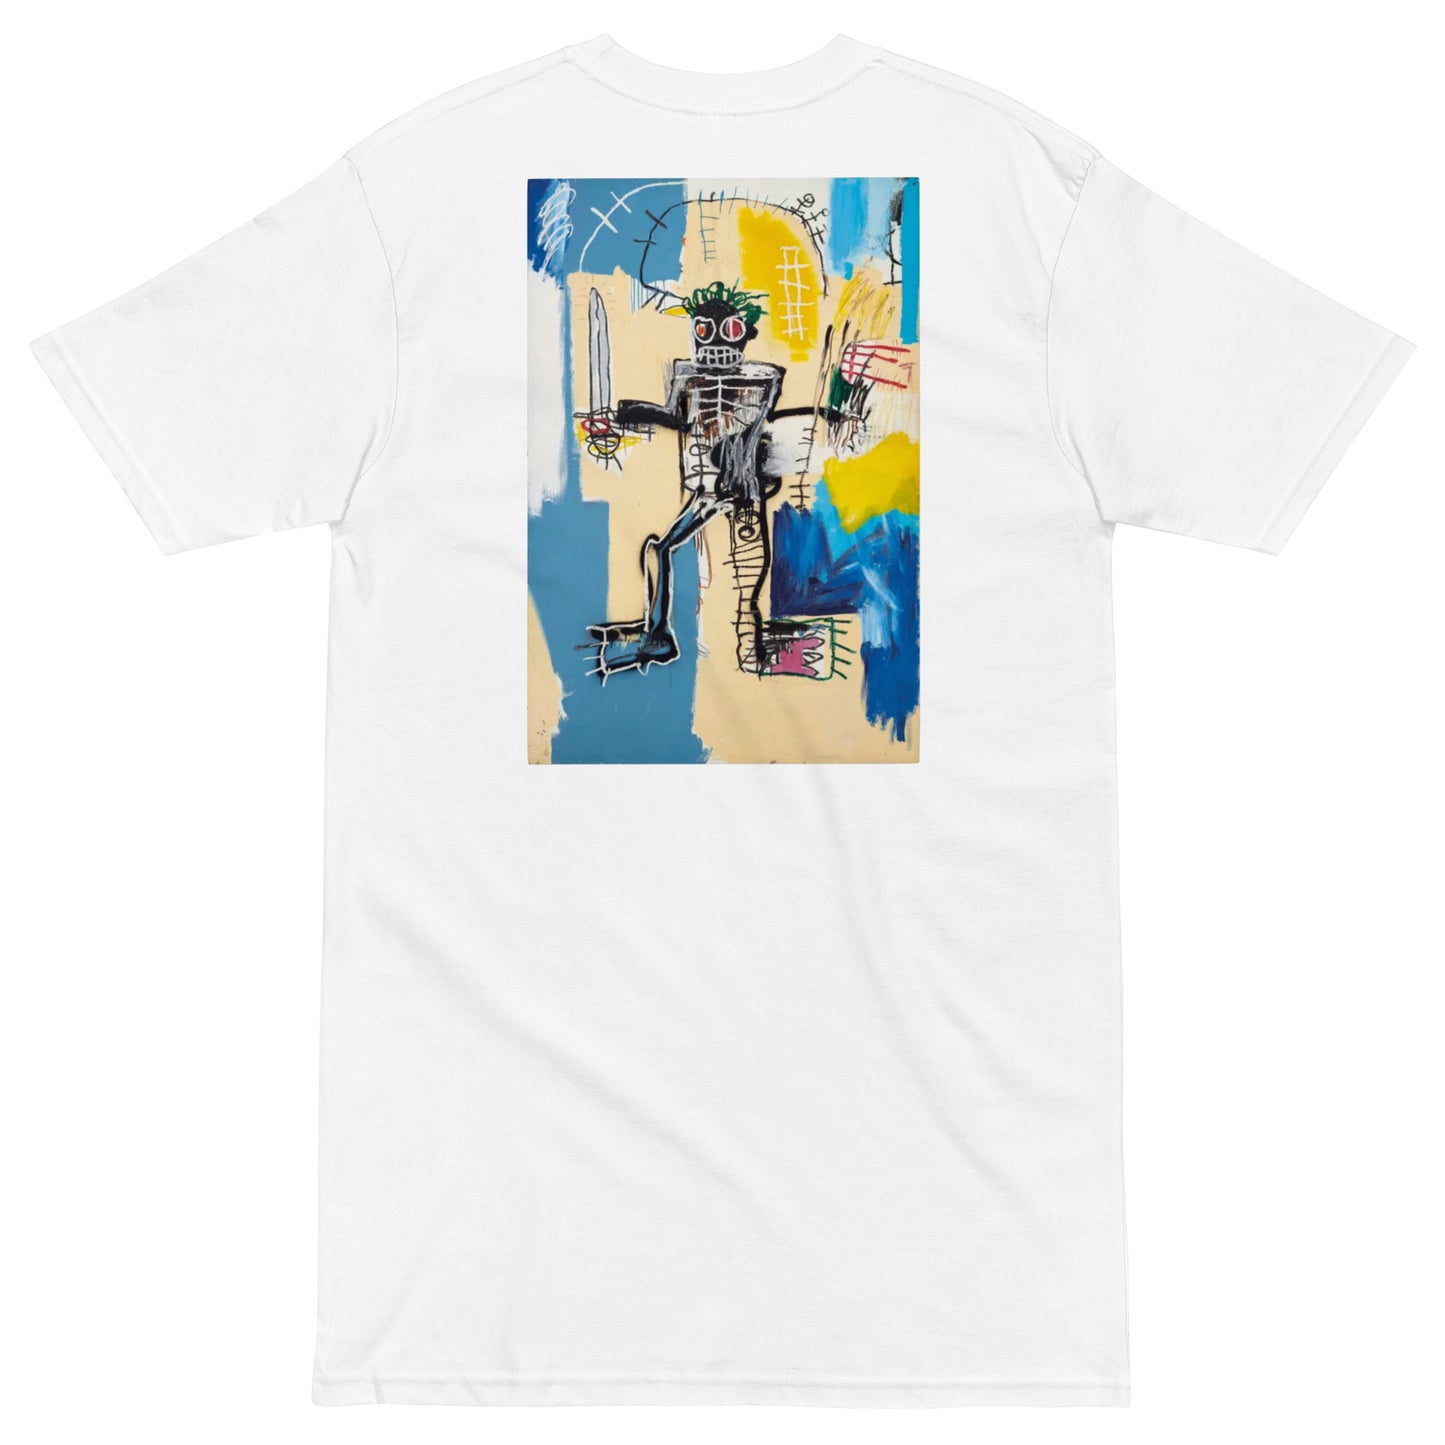 Jean-Michel Basquiat "Warrior" 1982 Artwork Embroidered + Printed Premium Streetwear T-shirt White